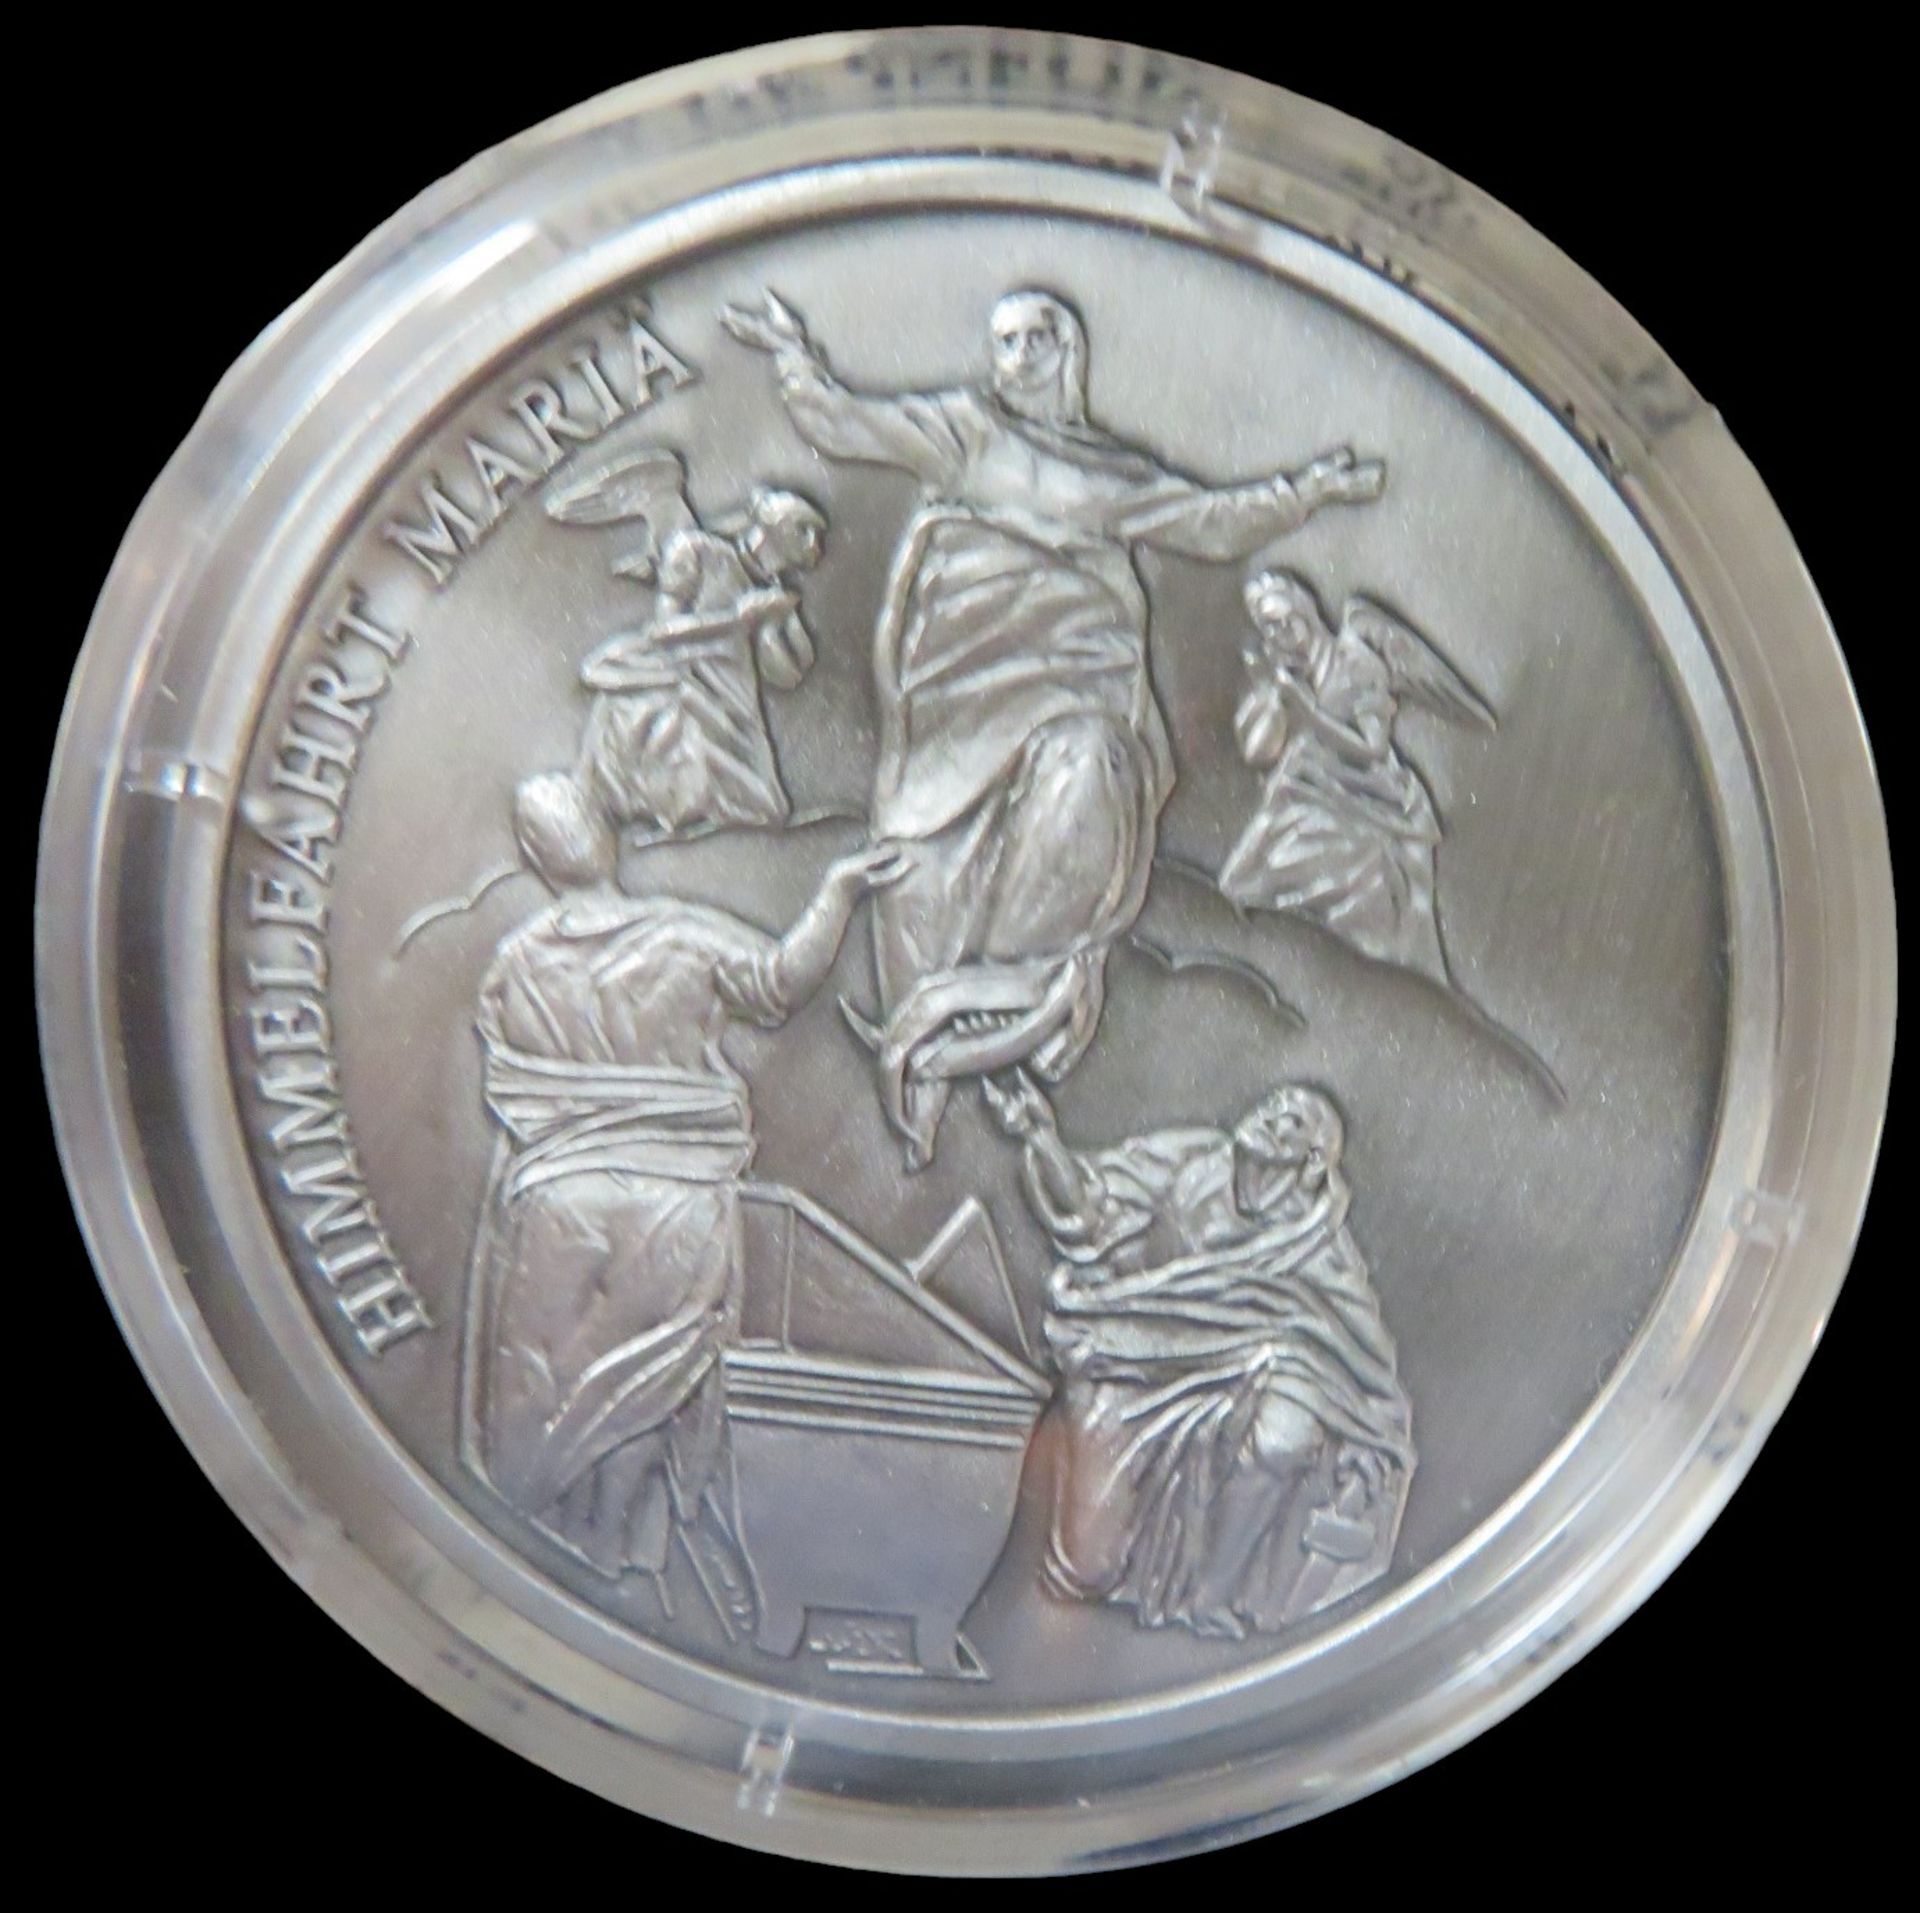 12 Silbermünzen, Geschichte des Christentums, 11 x je 20 g Feinsilber 999/000, diese zus. 220 g, 1 - Image 2 of 4